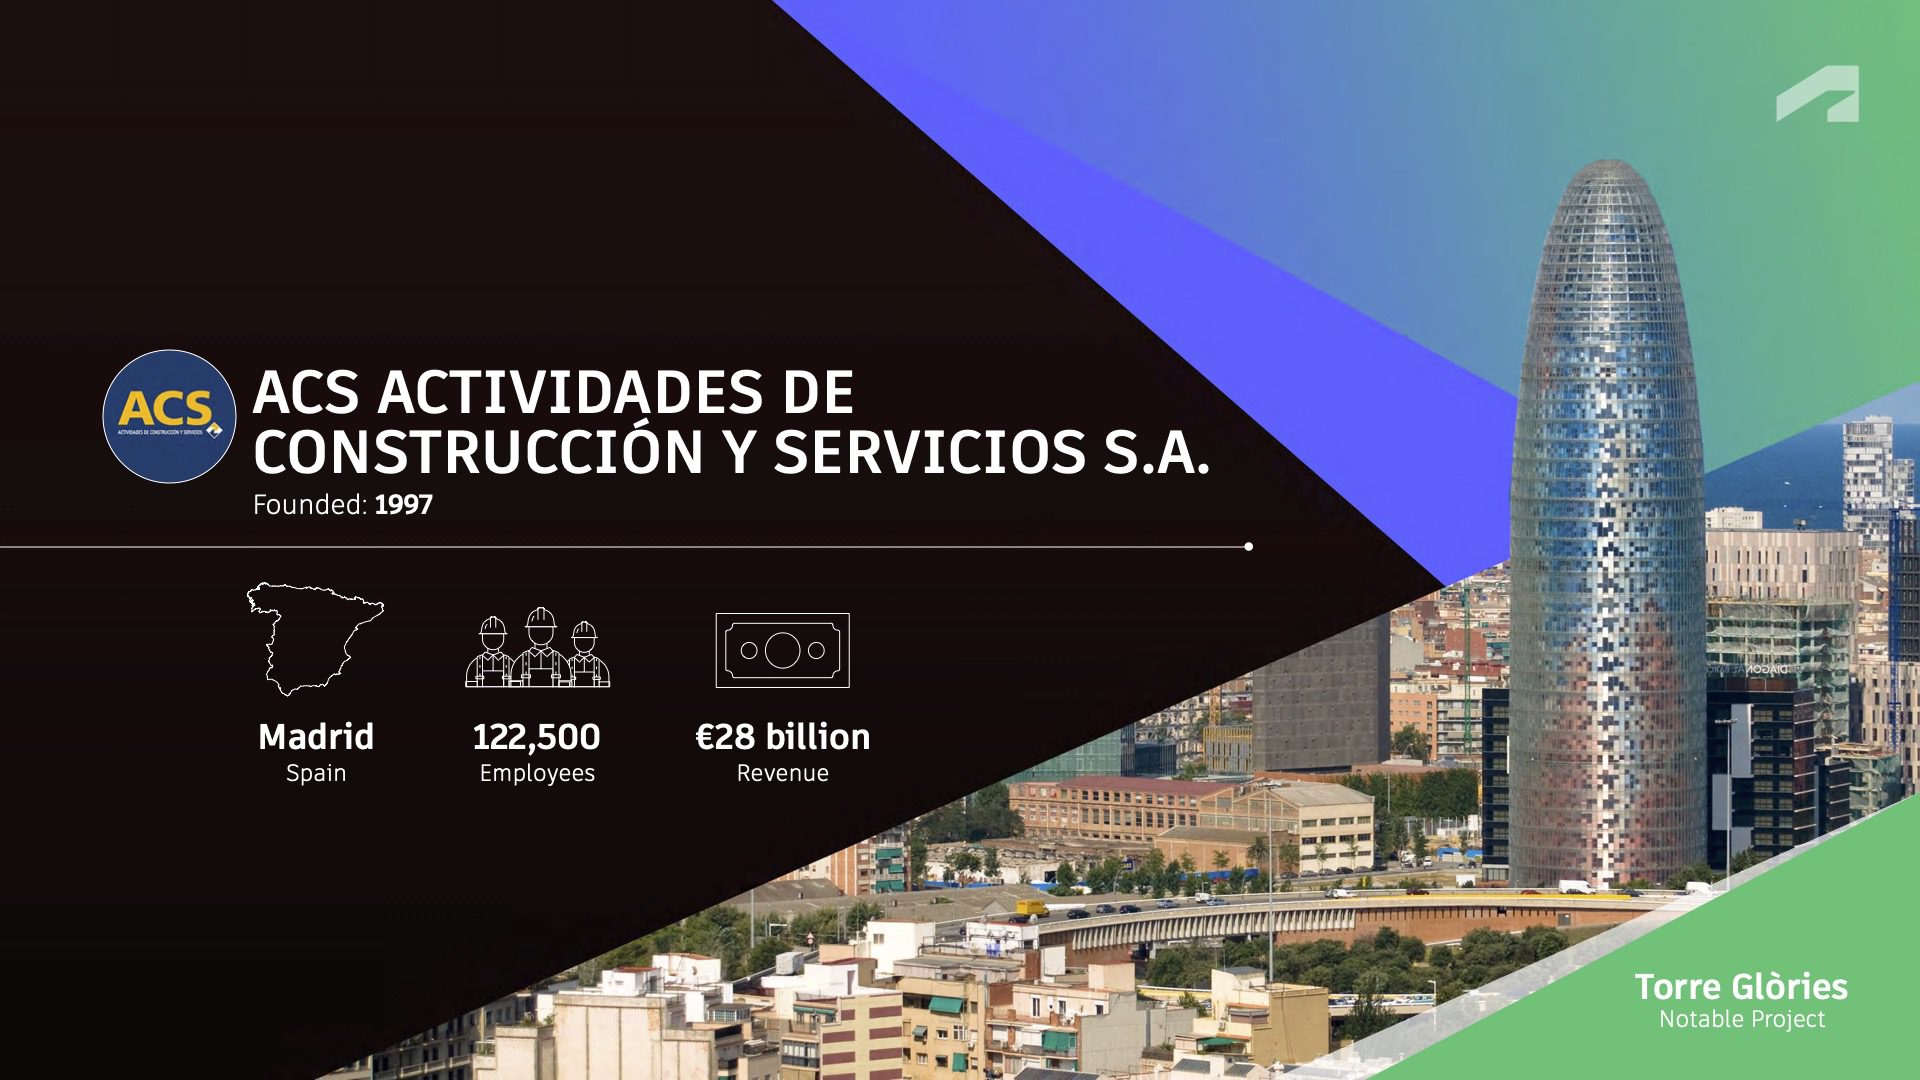 1:ACS对于de Construccion y Servicios S.A.建筑公司